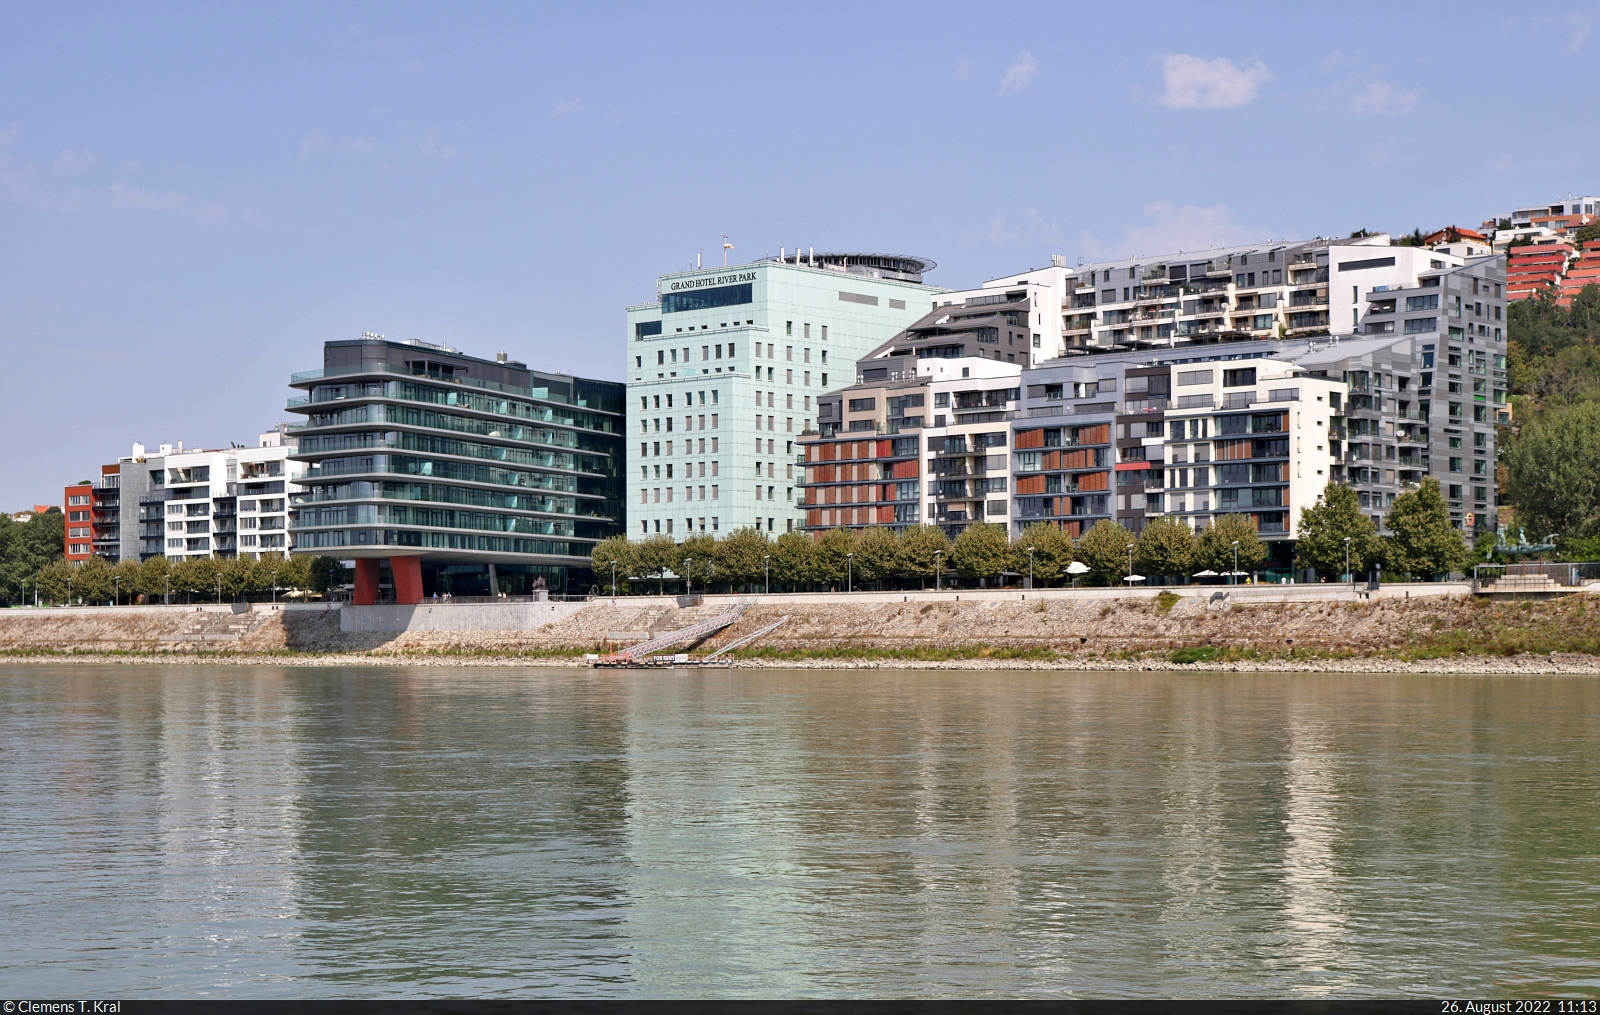 Bratislava (SK):
Entlang der Donau wurden auch einige neue Gebude errichtet. So auch westlich der Burg, wo sich der  River Park  erhebt. Er beherbergt u.a. ein Luxushotel mit Hubschrauber-Landeplatz. Aufgenommen whrend einer Donau-Schiffsfahrt.

🕓 26.8.2022 | 11:13 Uhr